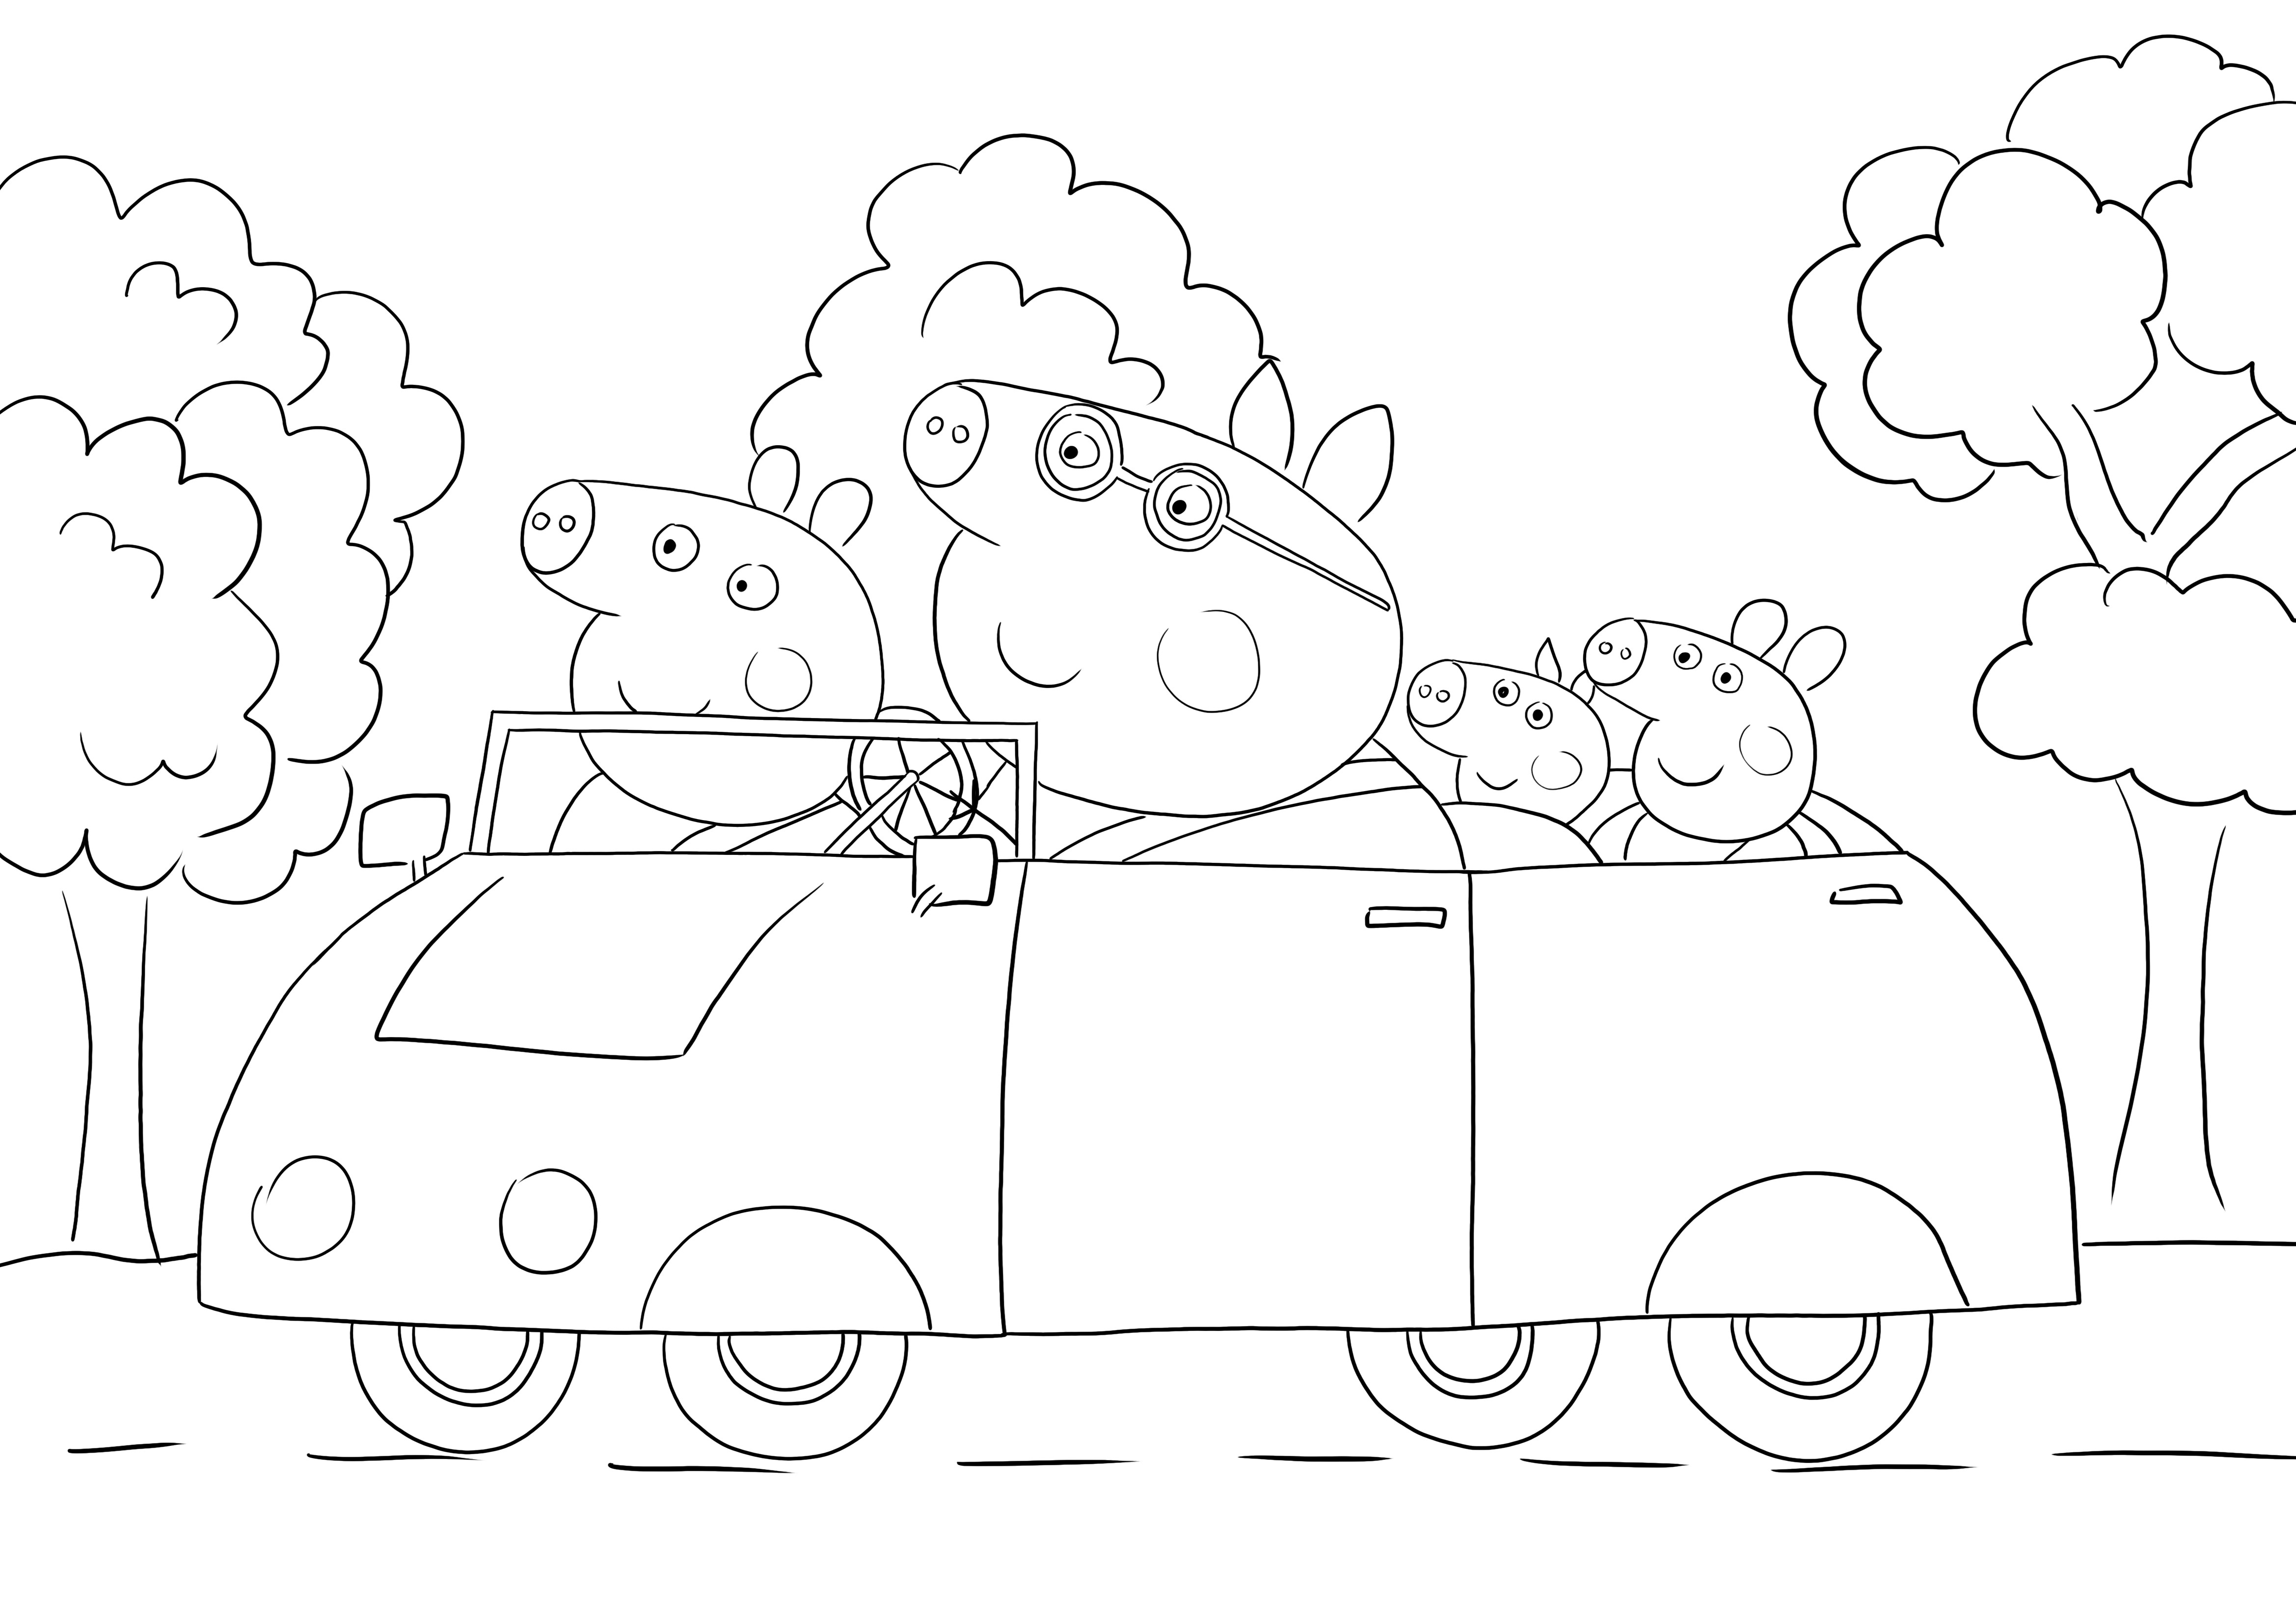 Peppa e la sua famiglia vanno in una pagina stampabile senza giro in macchina da colorare per i bambini